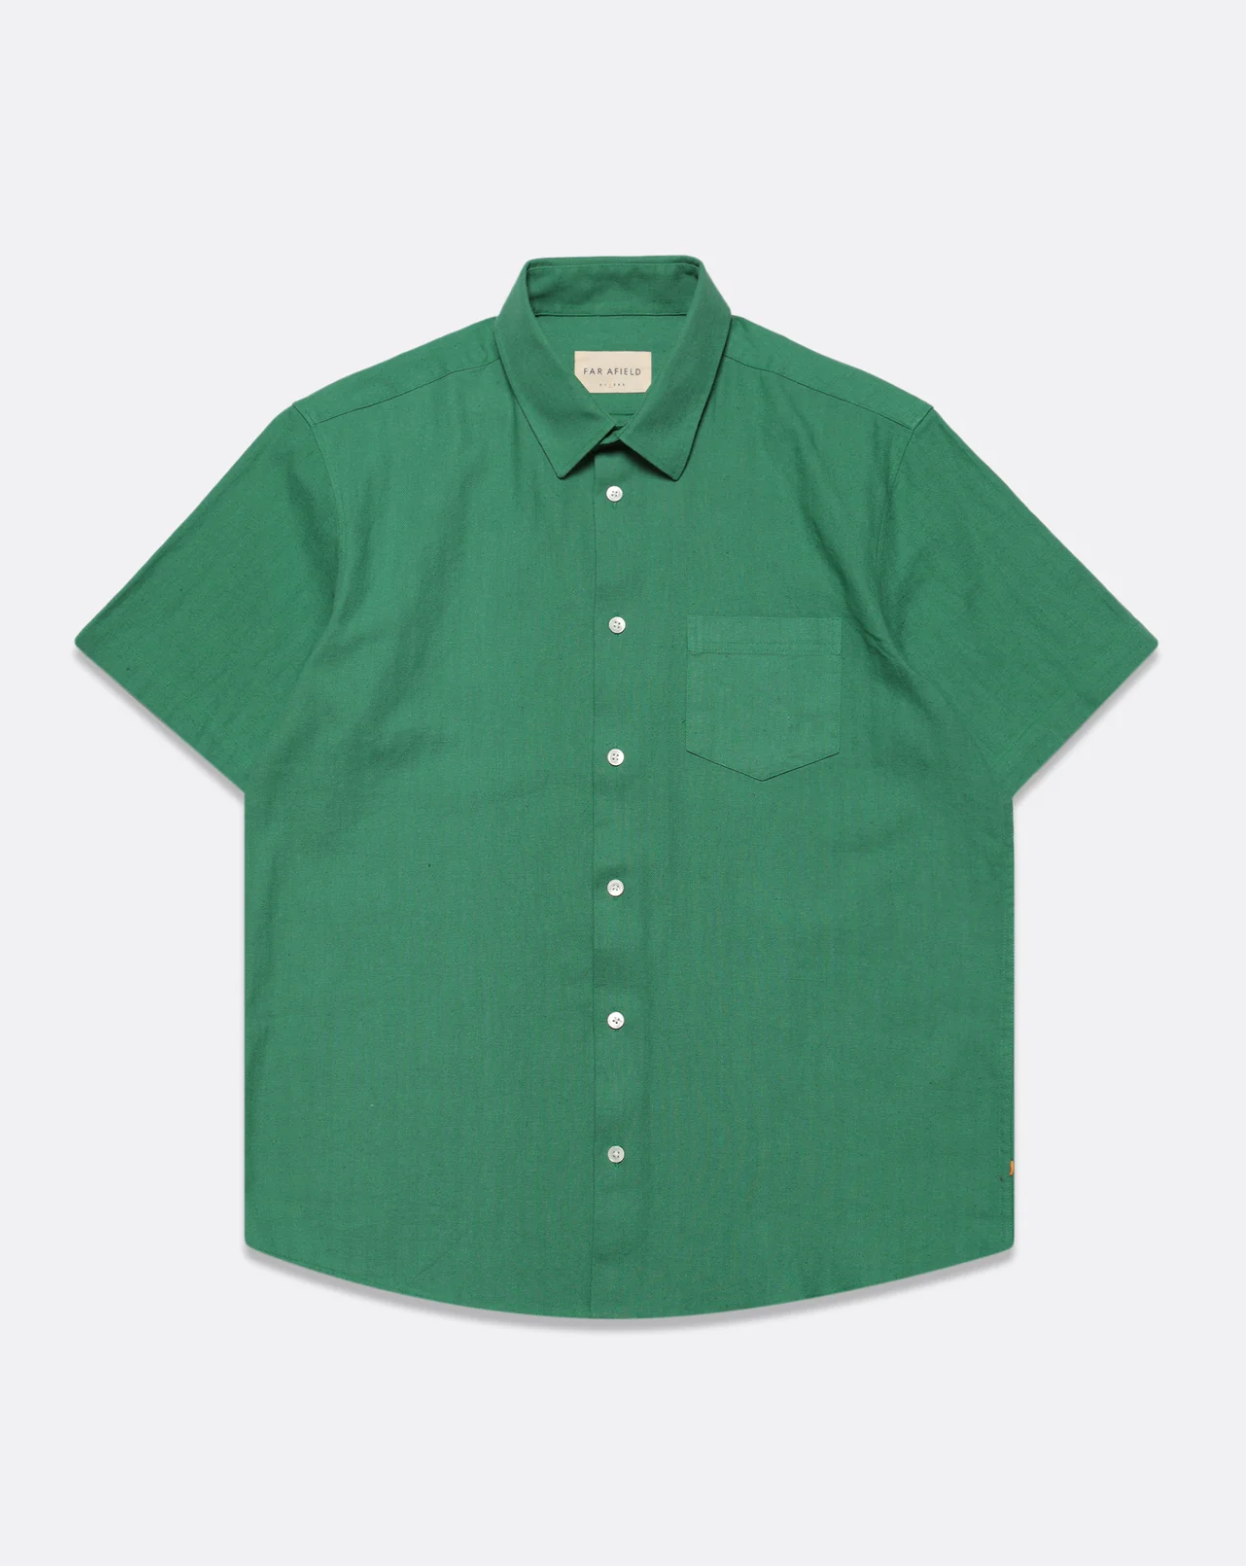 FAR AFIELD Classic S/S Shirt- Herringbone Twill